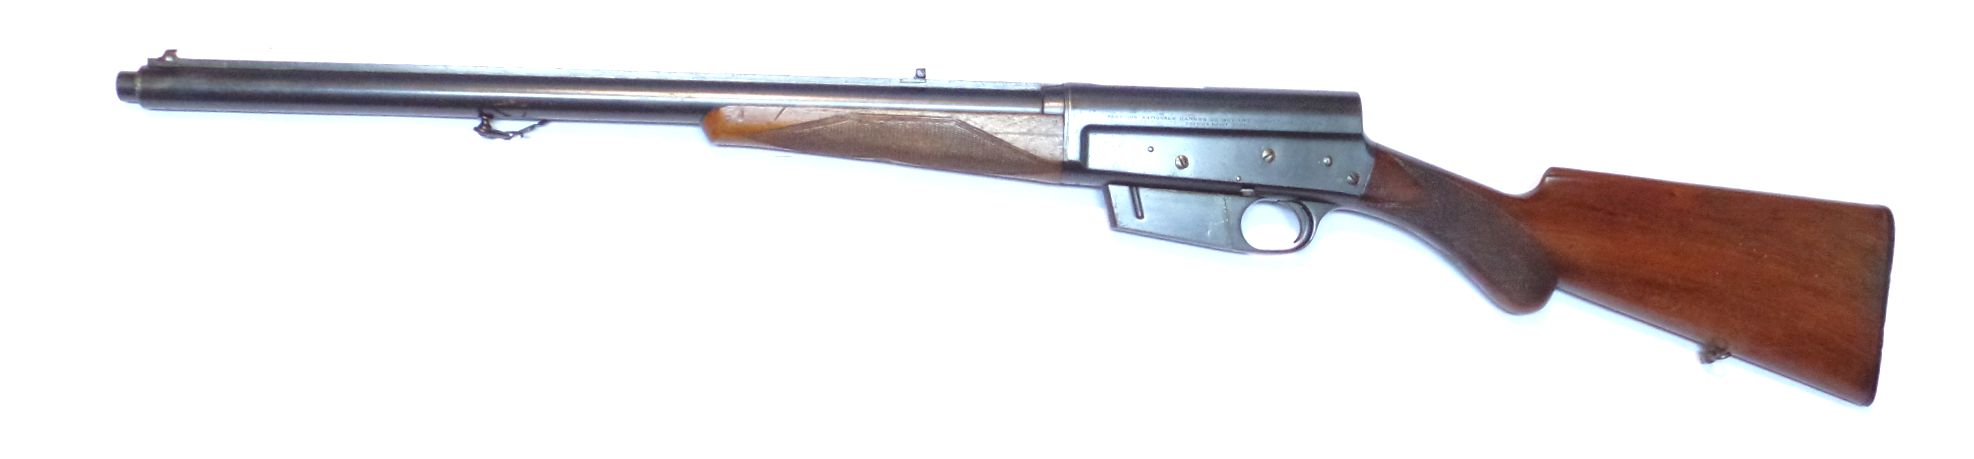 Browning - FN - Modèle 1900 calibre 35 Rem